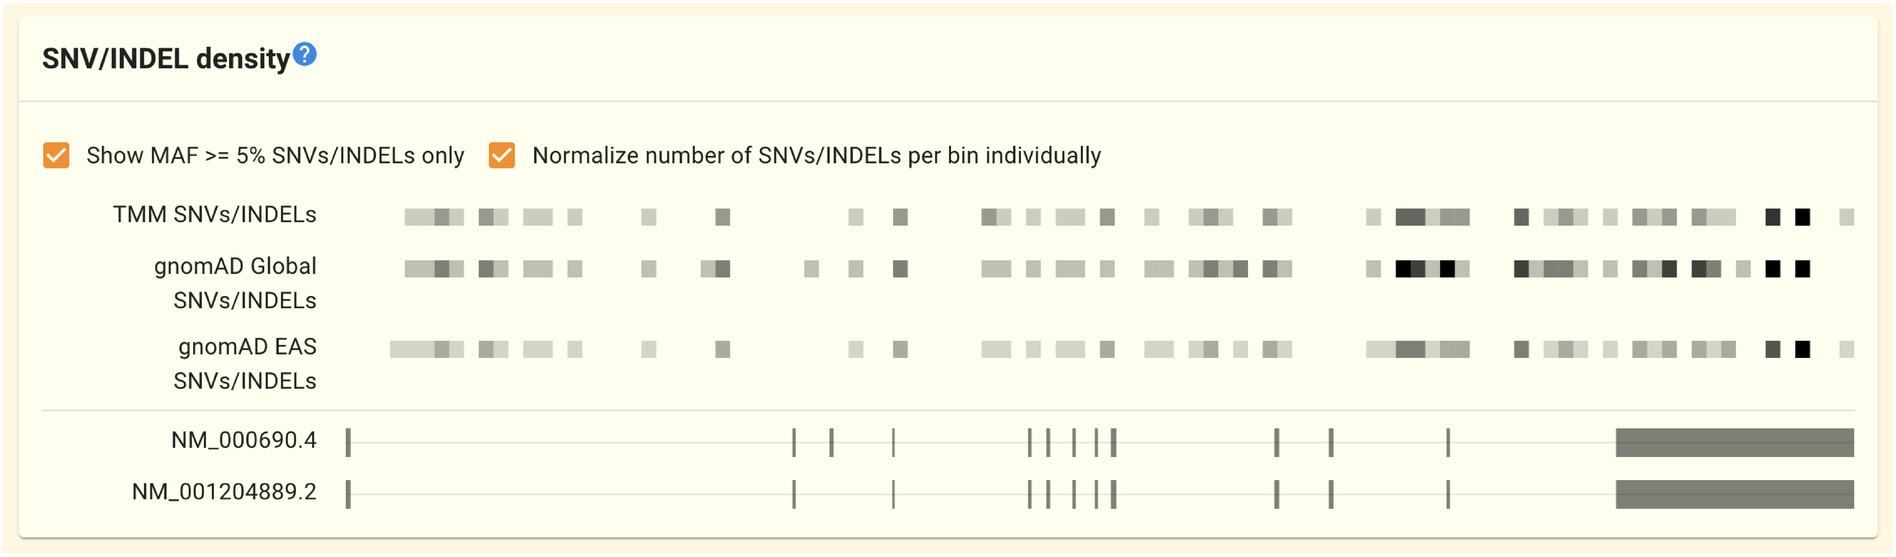 ../../_images/gene-snvindel_density_panel.en.png